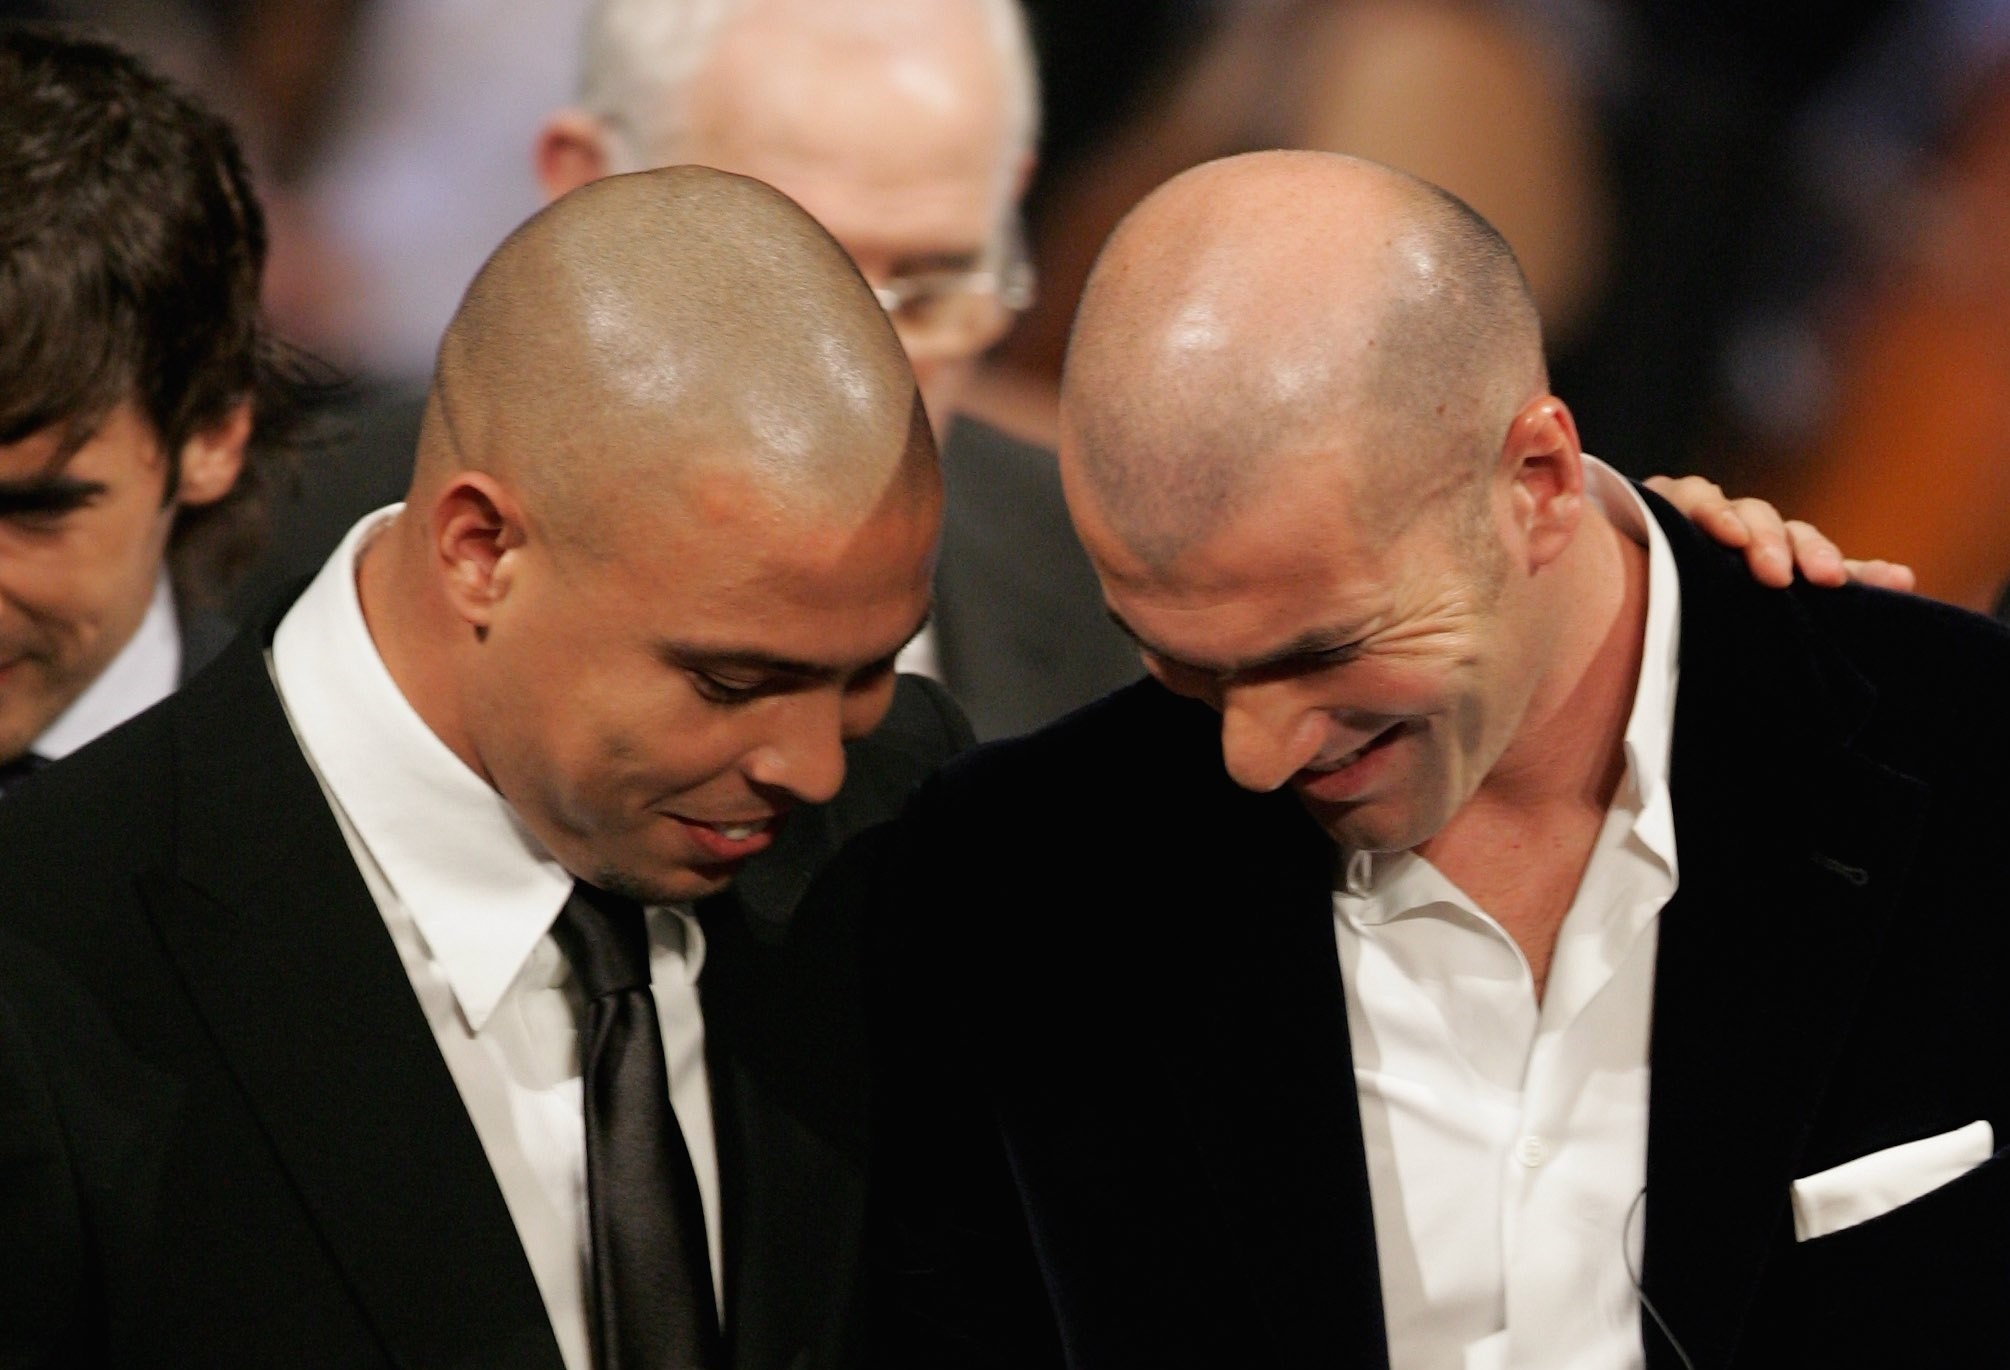 Vaza conversa entre Ronaldo Fenômeno e Zidane sobre Cruzeiro na premiação da Bola de Ouro